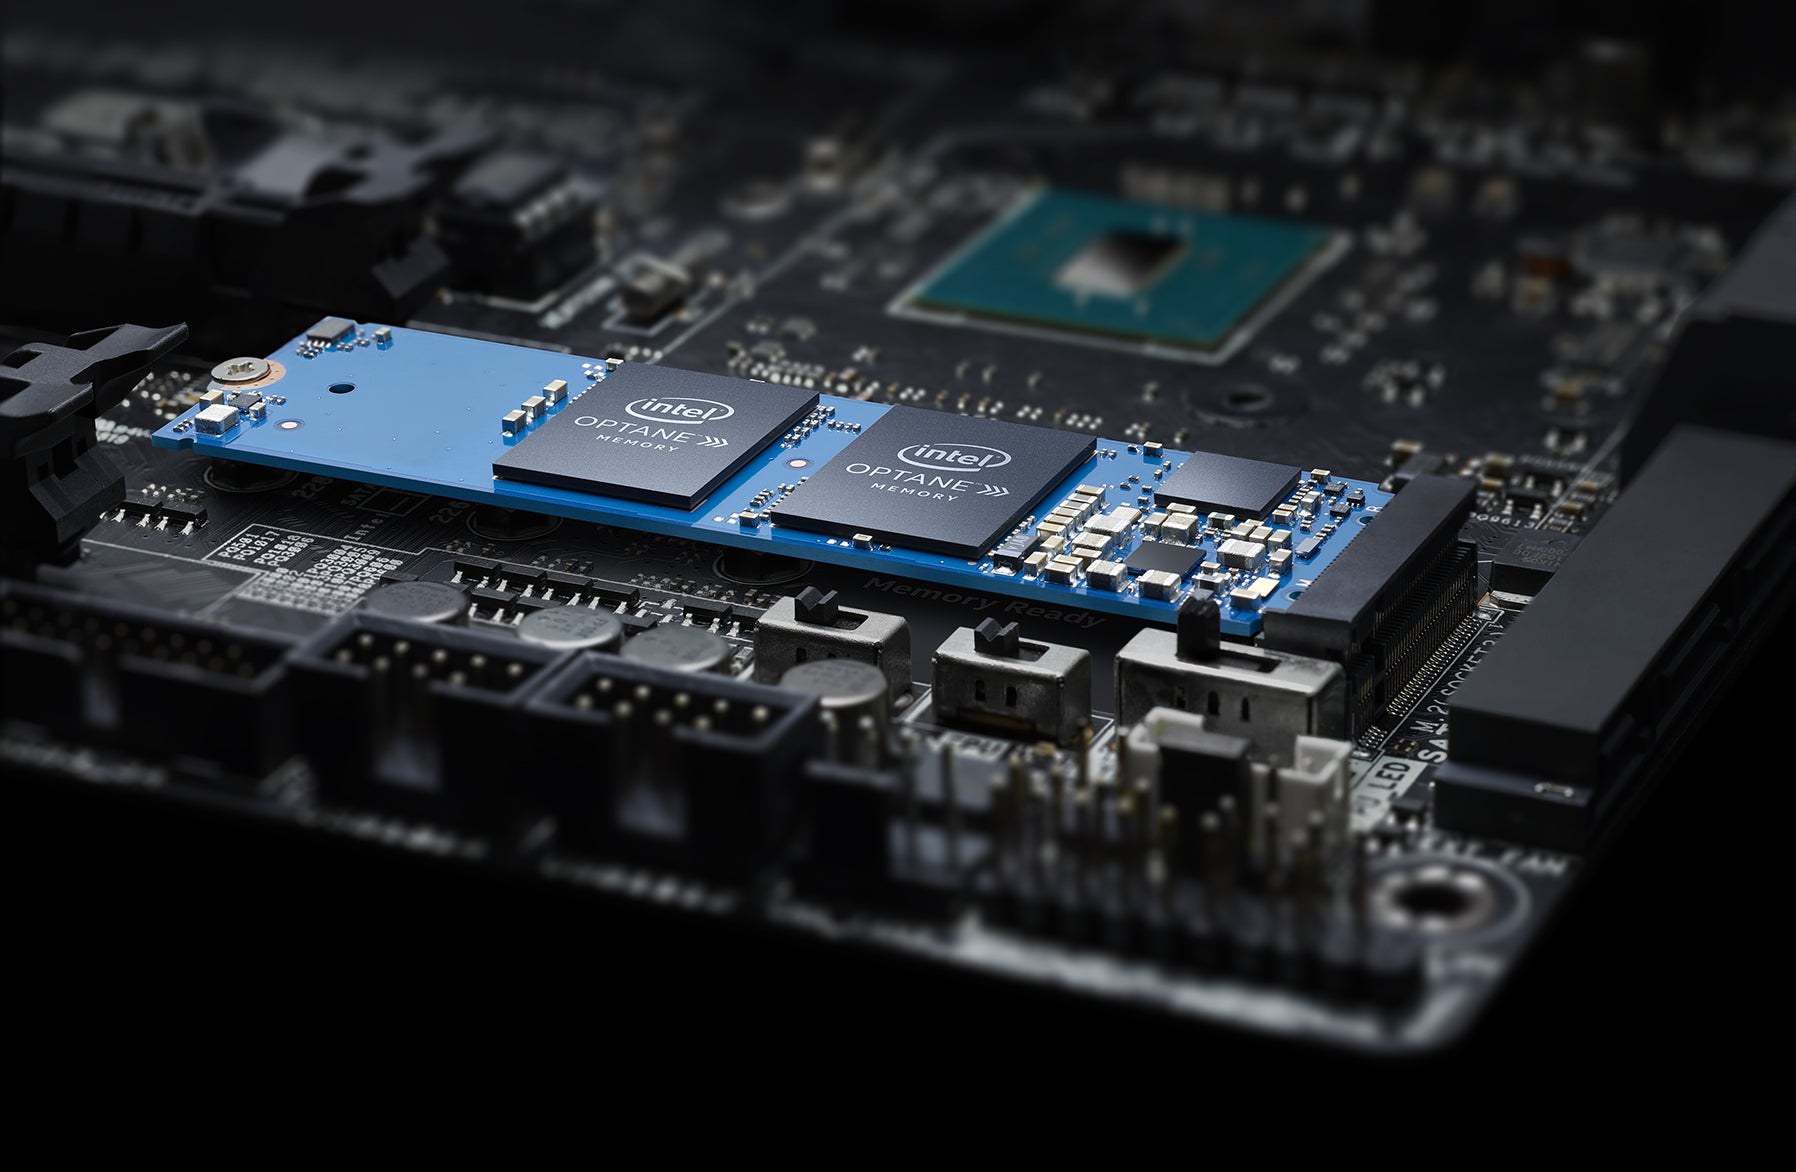 Procesor i5-12600K nabízí podporu Intel Optane Memory pro nejnovější cachovací paměti, které dokáží zrychlit váš plotnový disk o několik desítek %.